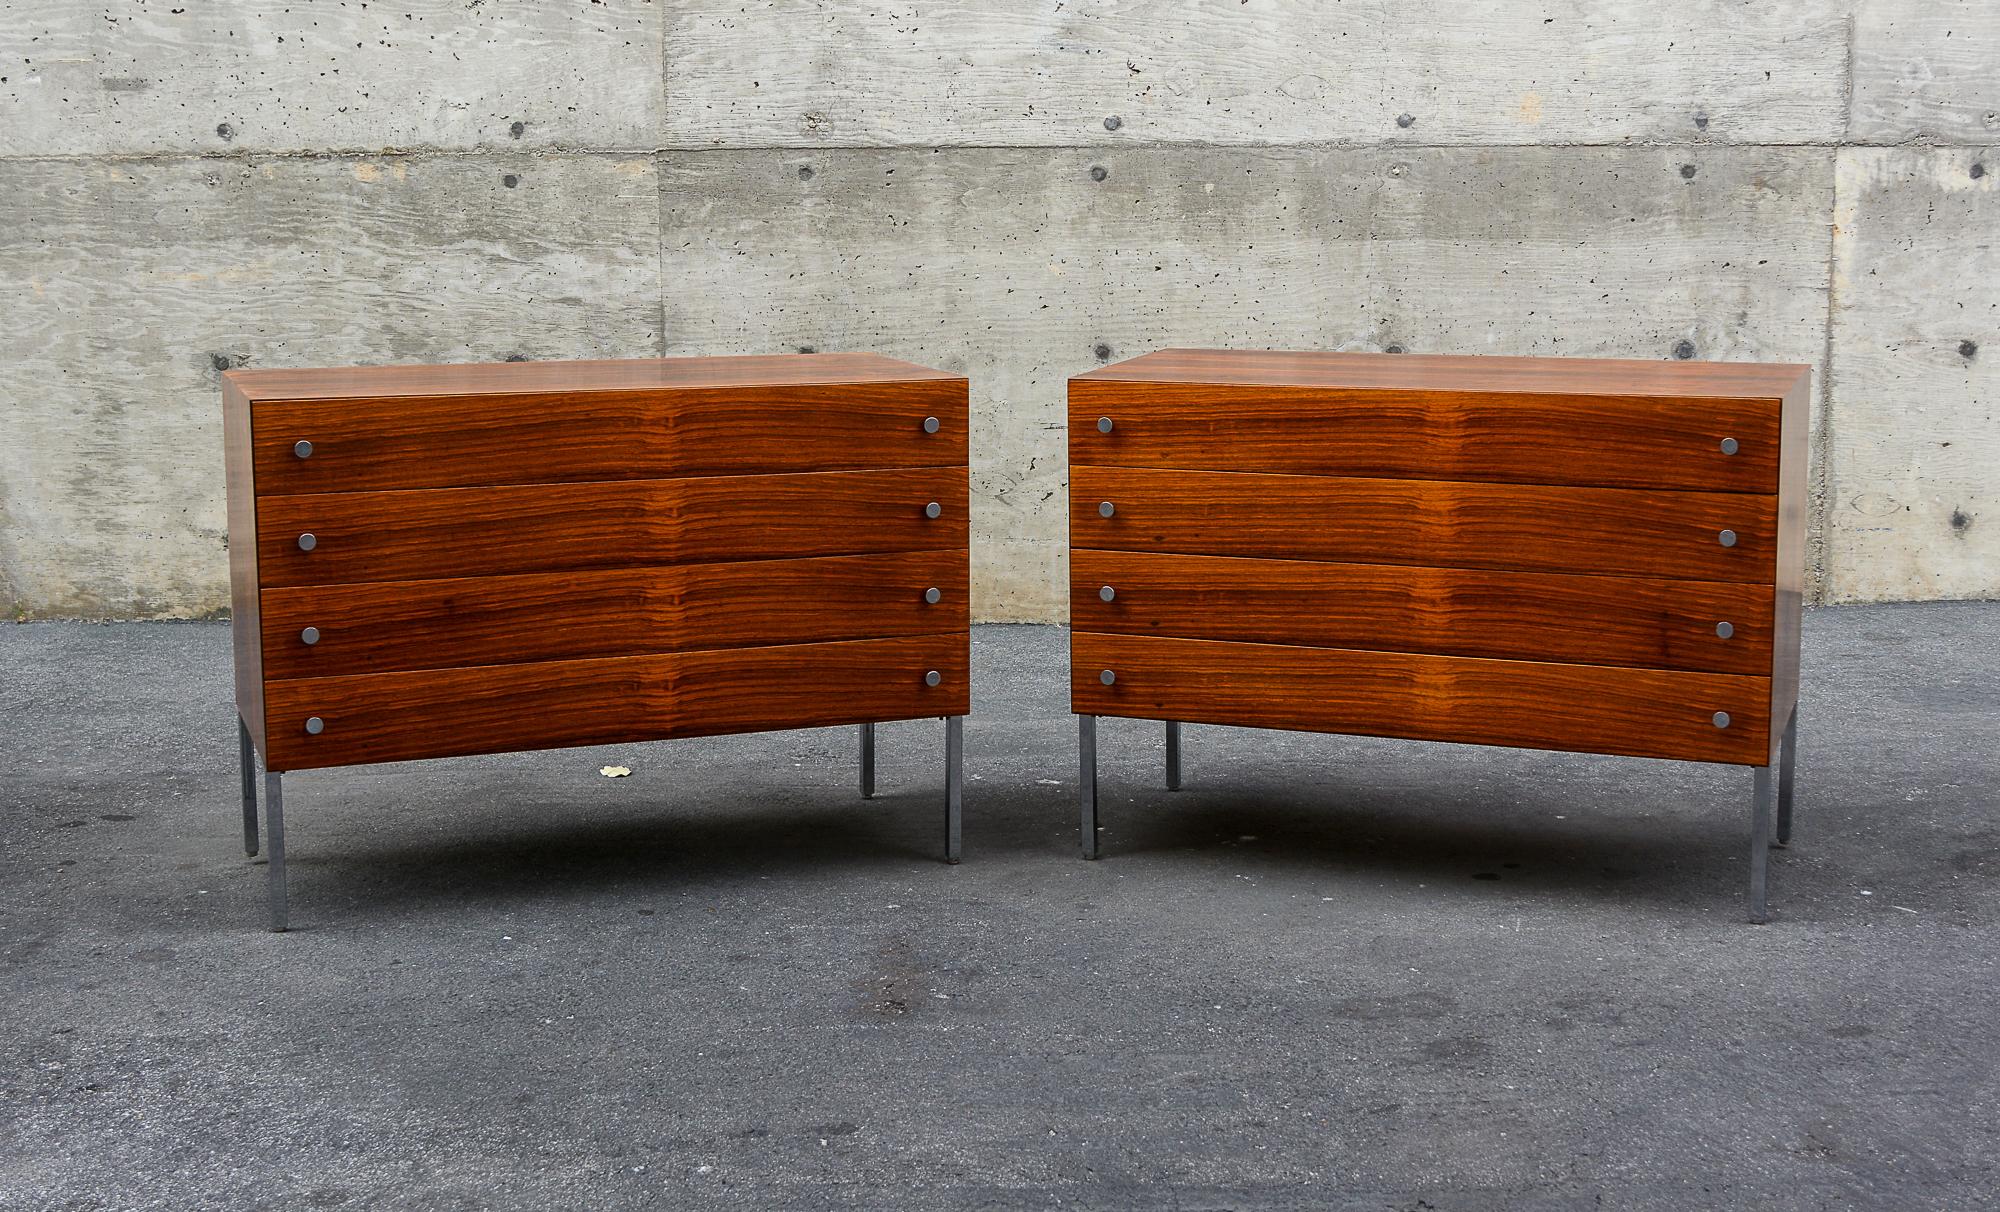 Zwei Kommoden aus Palisanderholz, entworfen von Poul Norreklit. Diese wurden von der Sigurd Hansen Mobelfabrik in Dänemark hergestellt. Die Beine und Griffe sind verchromt. Die Maserung des Palisanderholzes ist hervorragend. Diese wurden neu